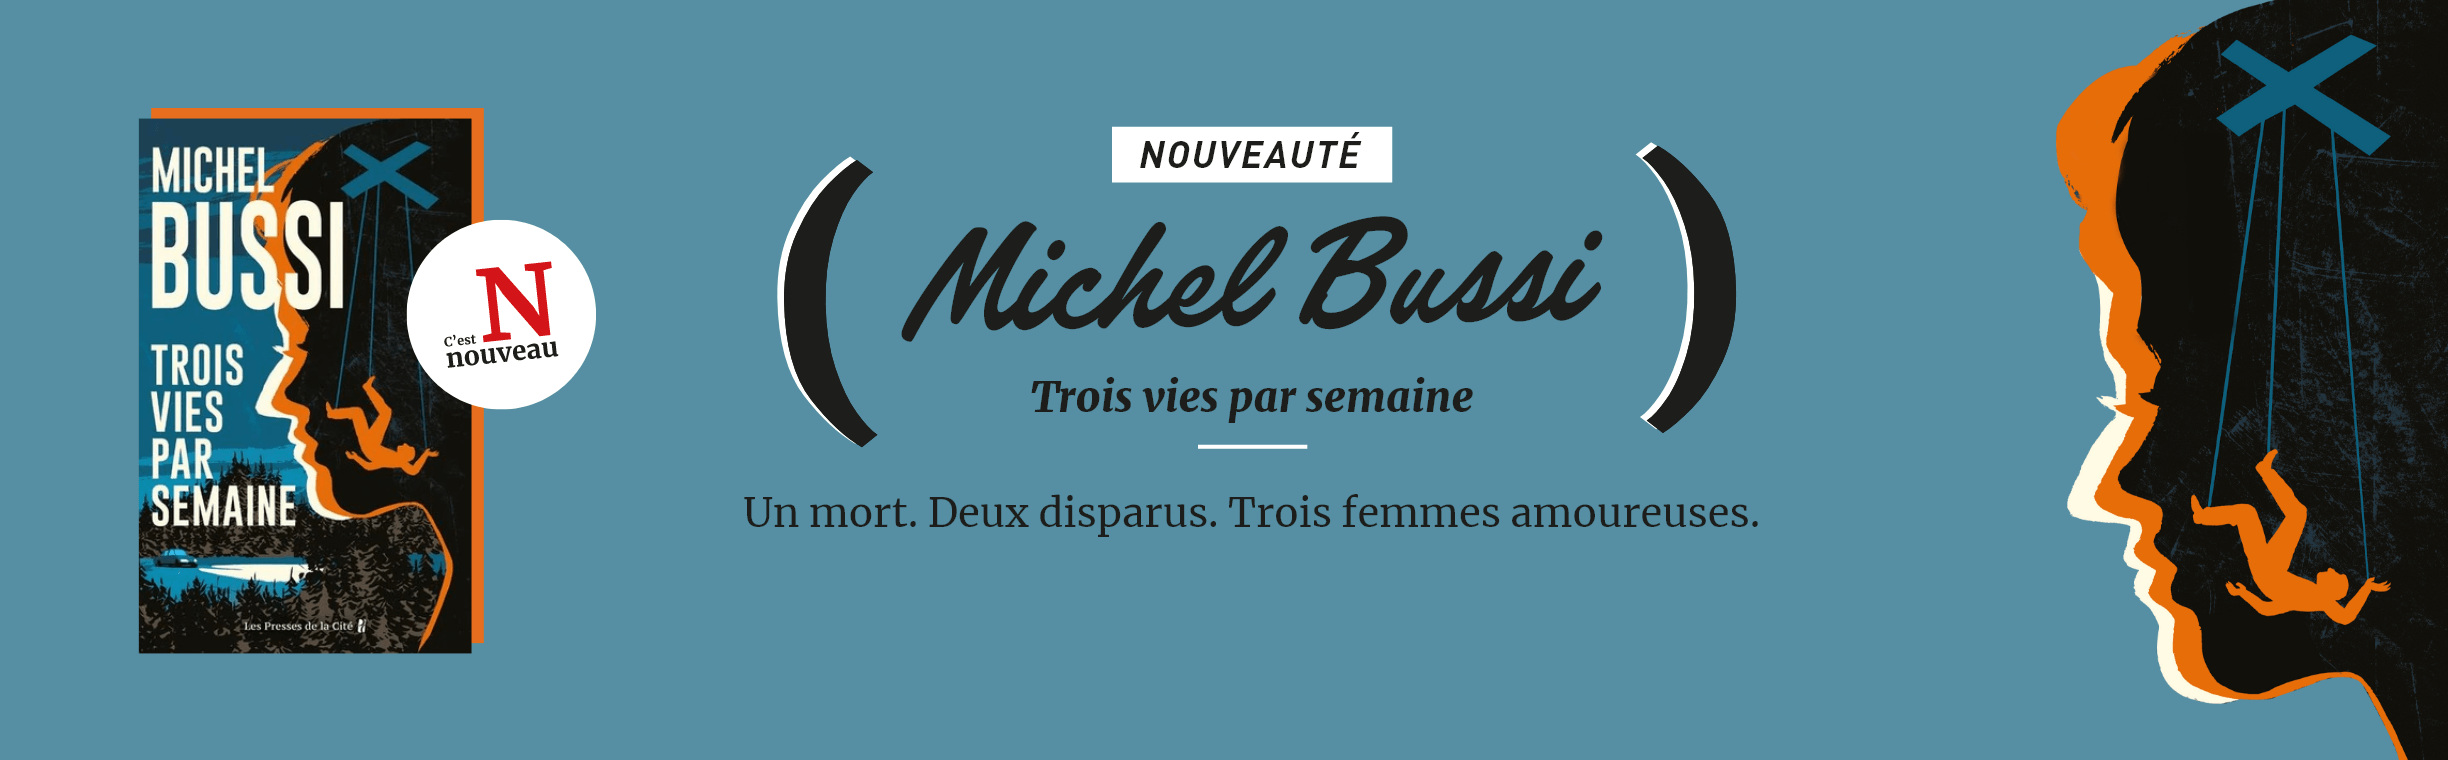 Nouveauté - Michel Bussi